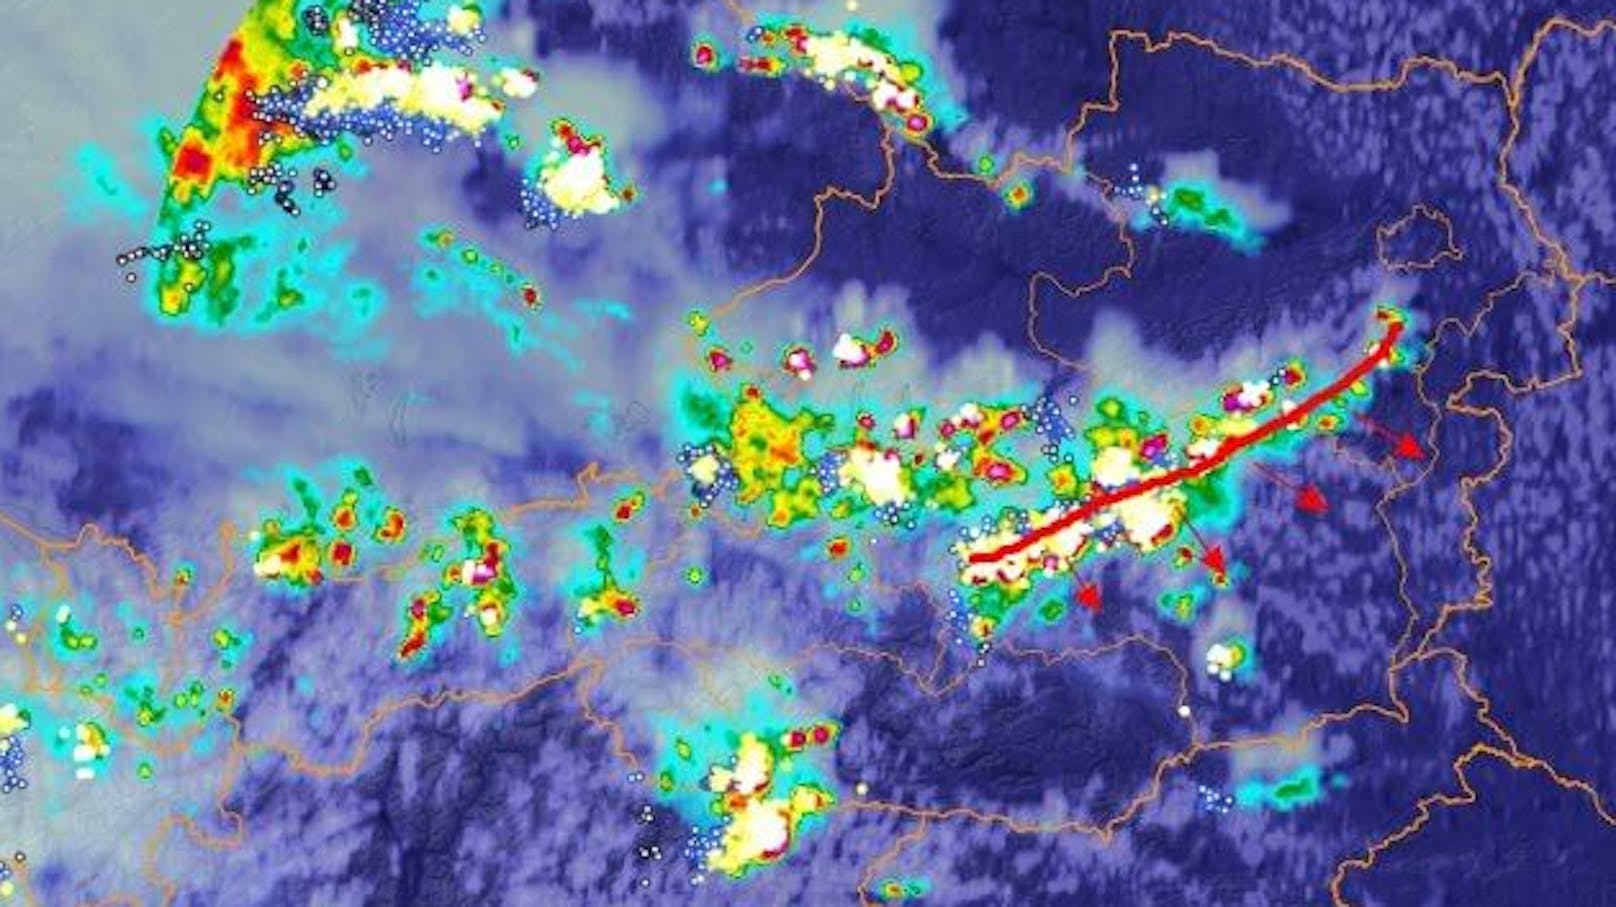 Radarbild mit Blitzen. Aufgenommen am 13. August, gegen 15 Uhr